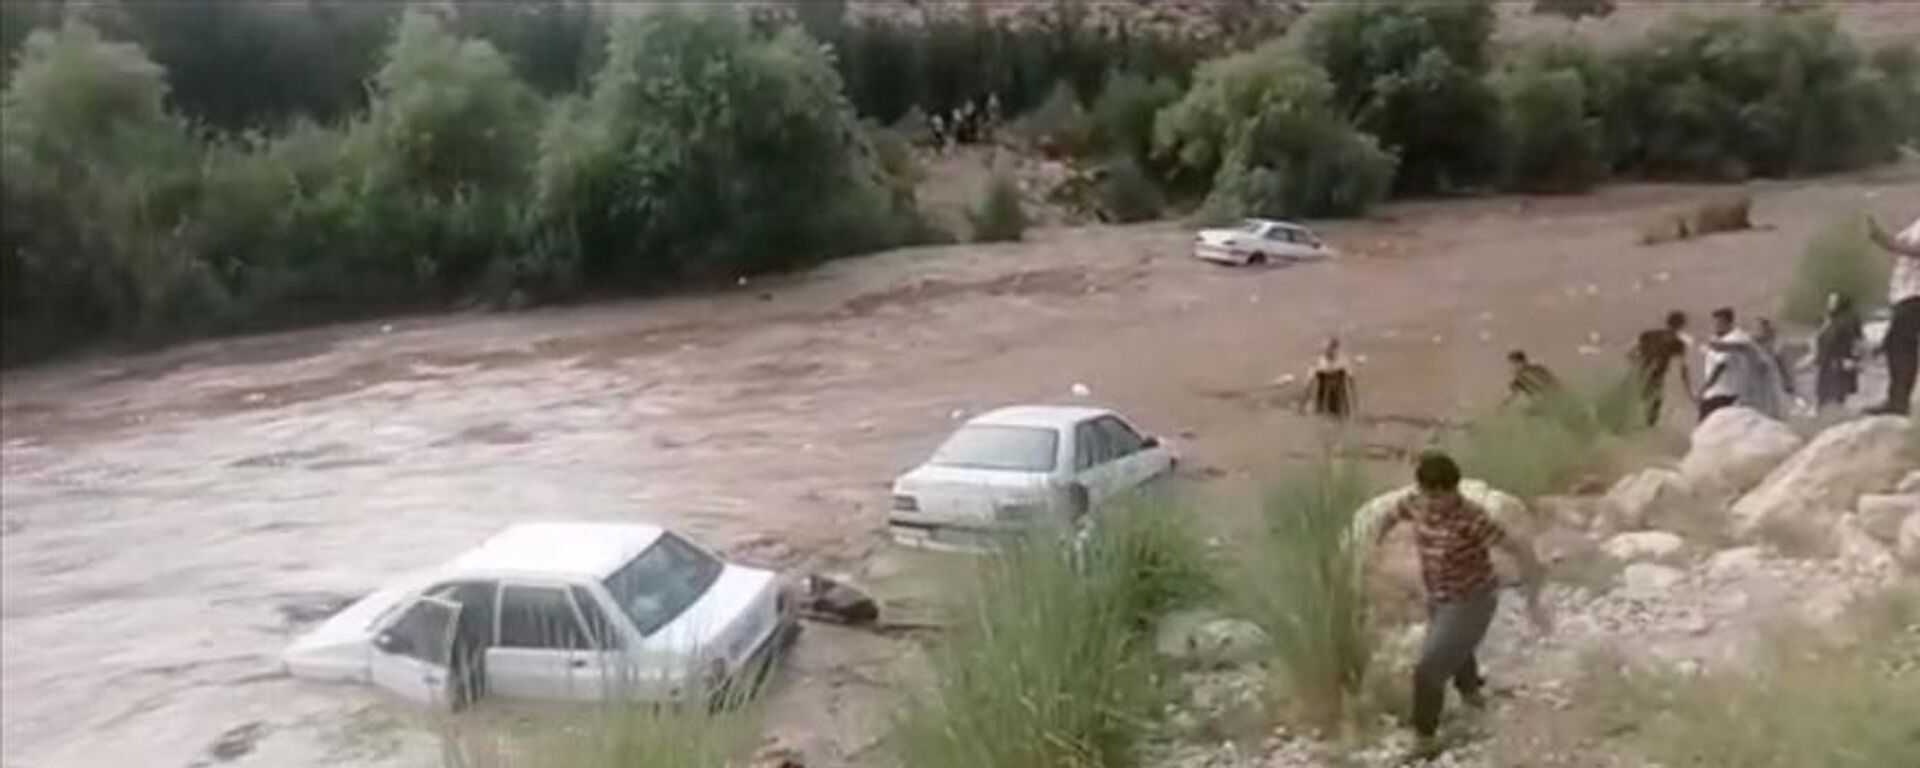 İran’ın birçok bölgesinde etkili olan şiddetli yağışlar nedeniyle meydana gelen sel felaketinde can kaybı 70'i geçti.  - Sputnik Türkiye, 1920, 02.08.2022